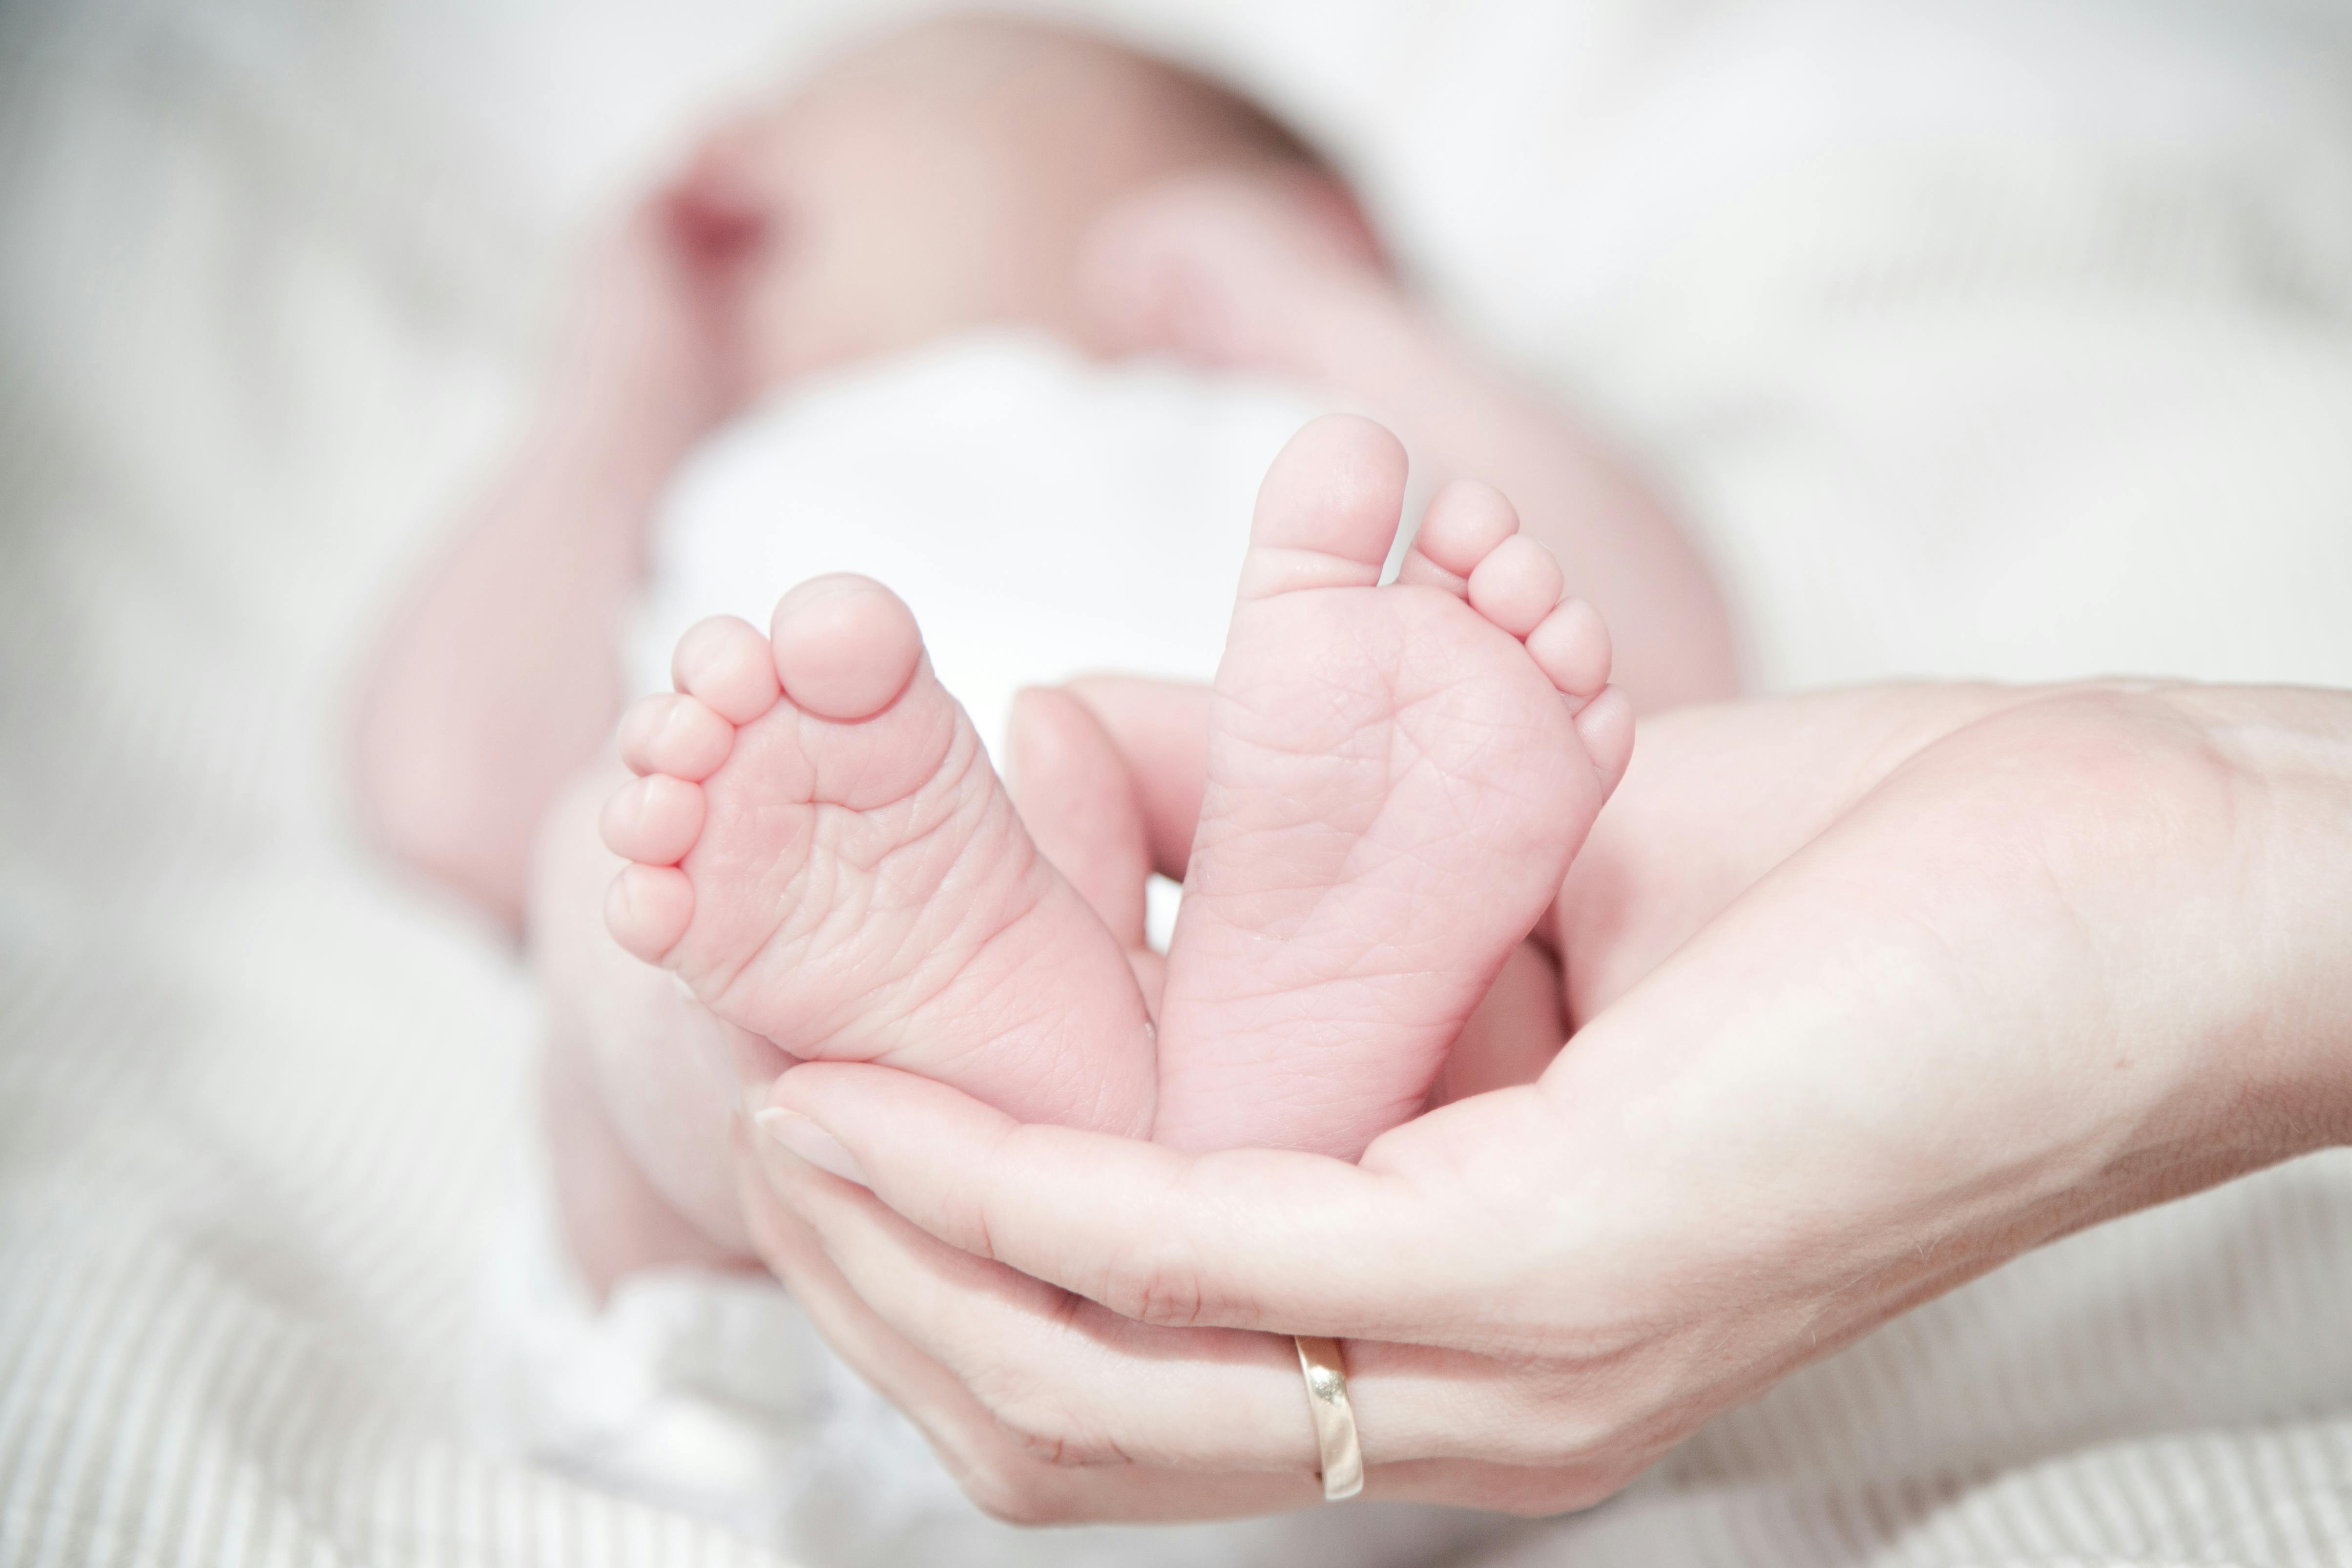 Una mujer sujeta los pies de su bebé recién nacido | Fuente: Pexels